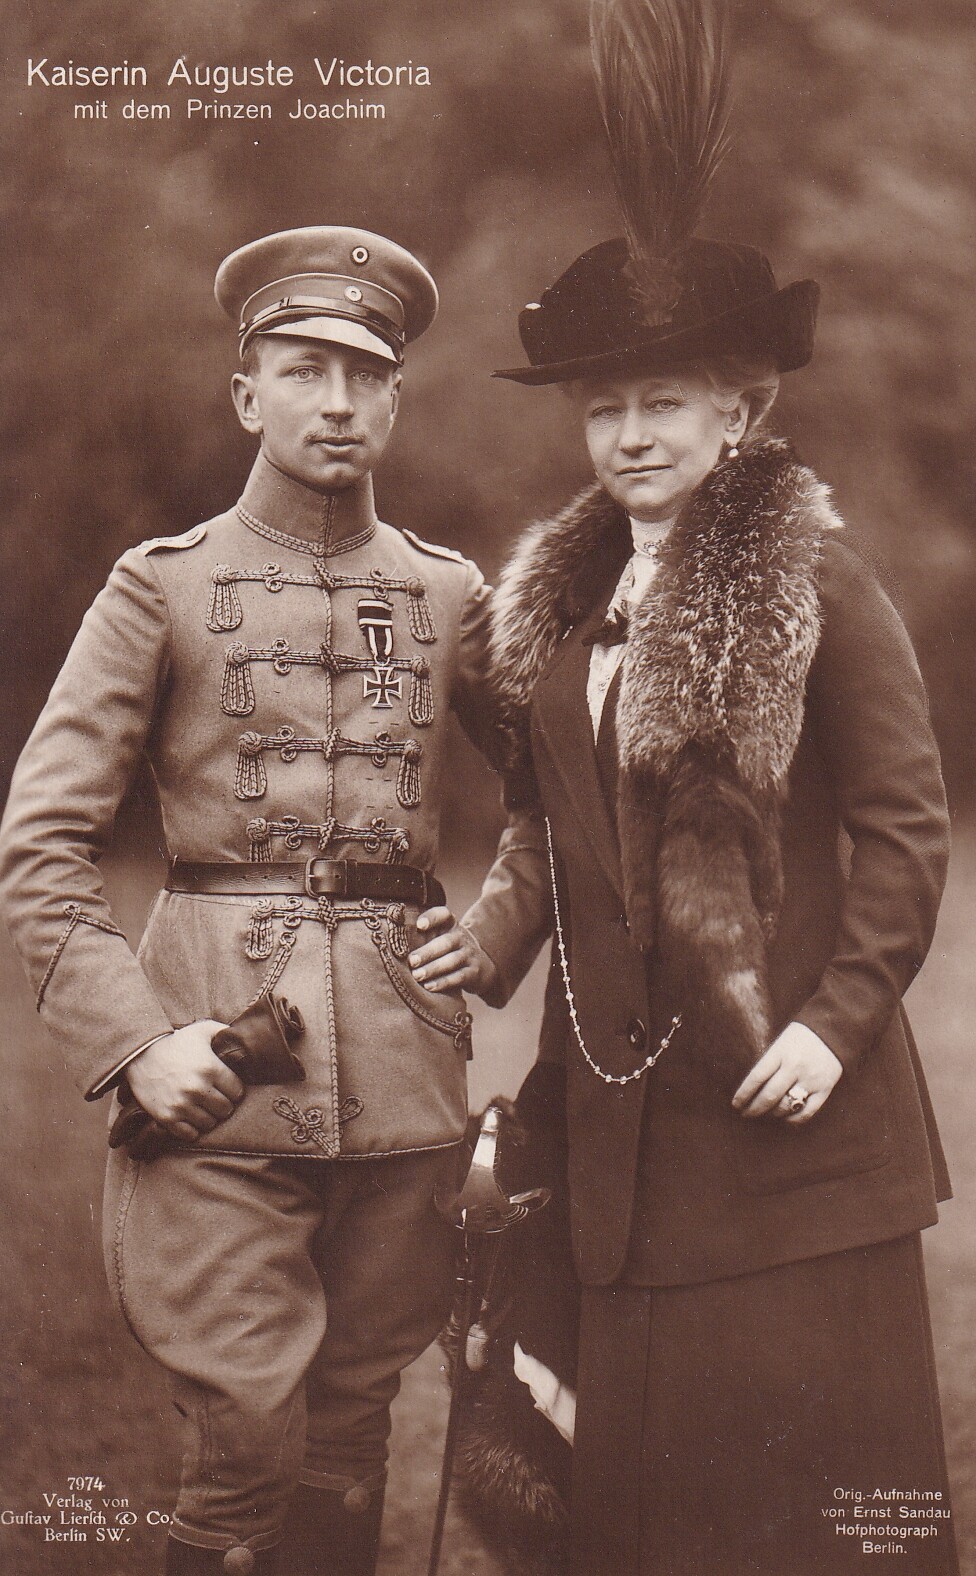 Bildpostkarte mit Foto der letzten deutschen Kaiserin Auguste Viktoria (1858-1940) mit ihrem Sohn Prinz Joachim von Preußen (1890-1920), 1916. (Schloß Wernigerode GmbH RR-F)